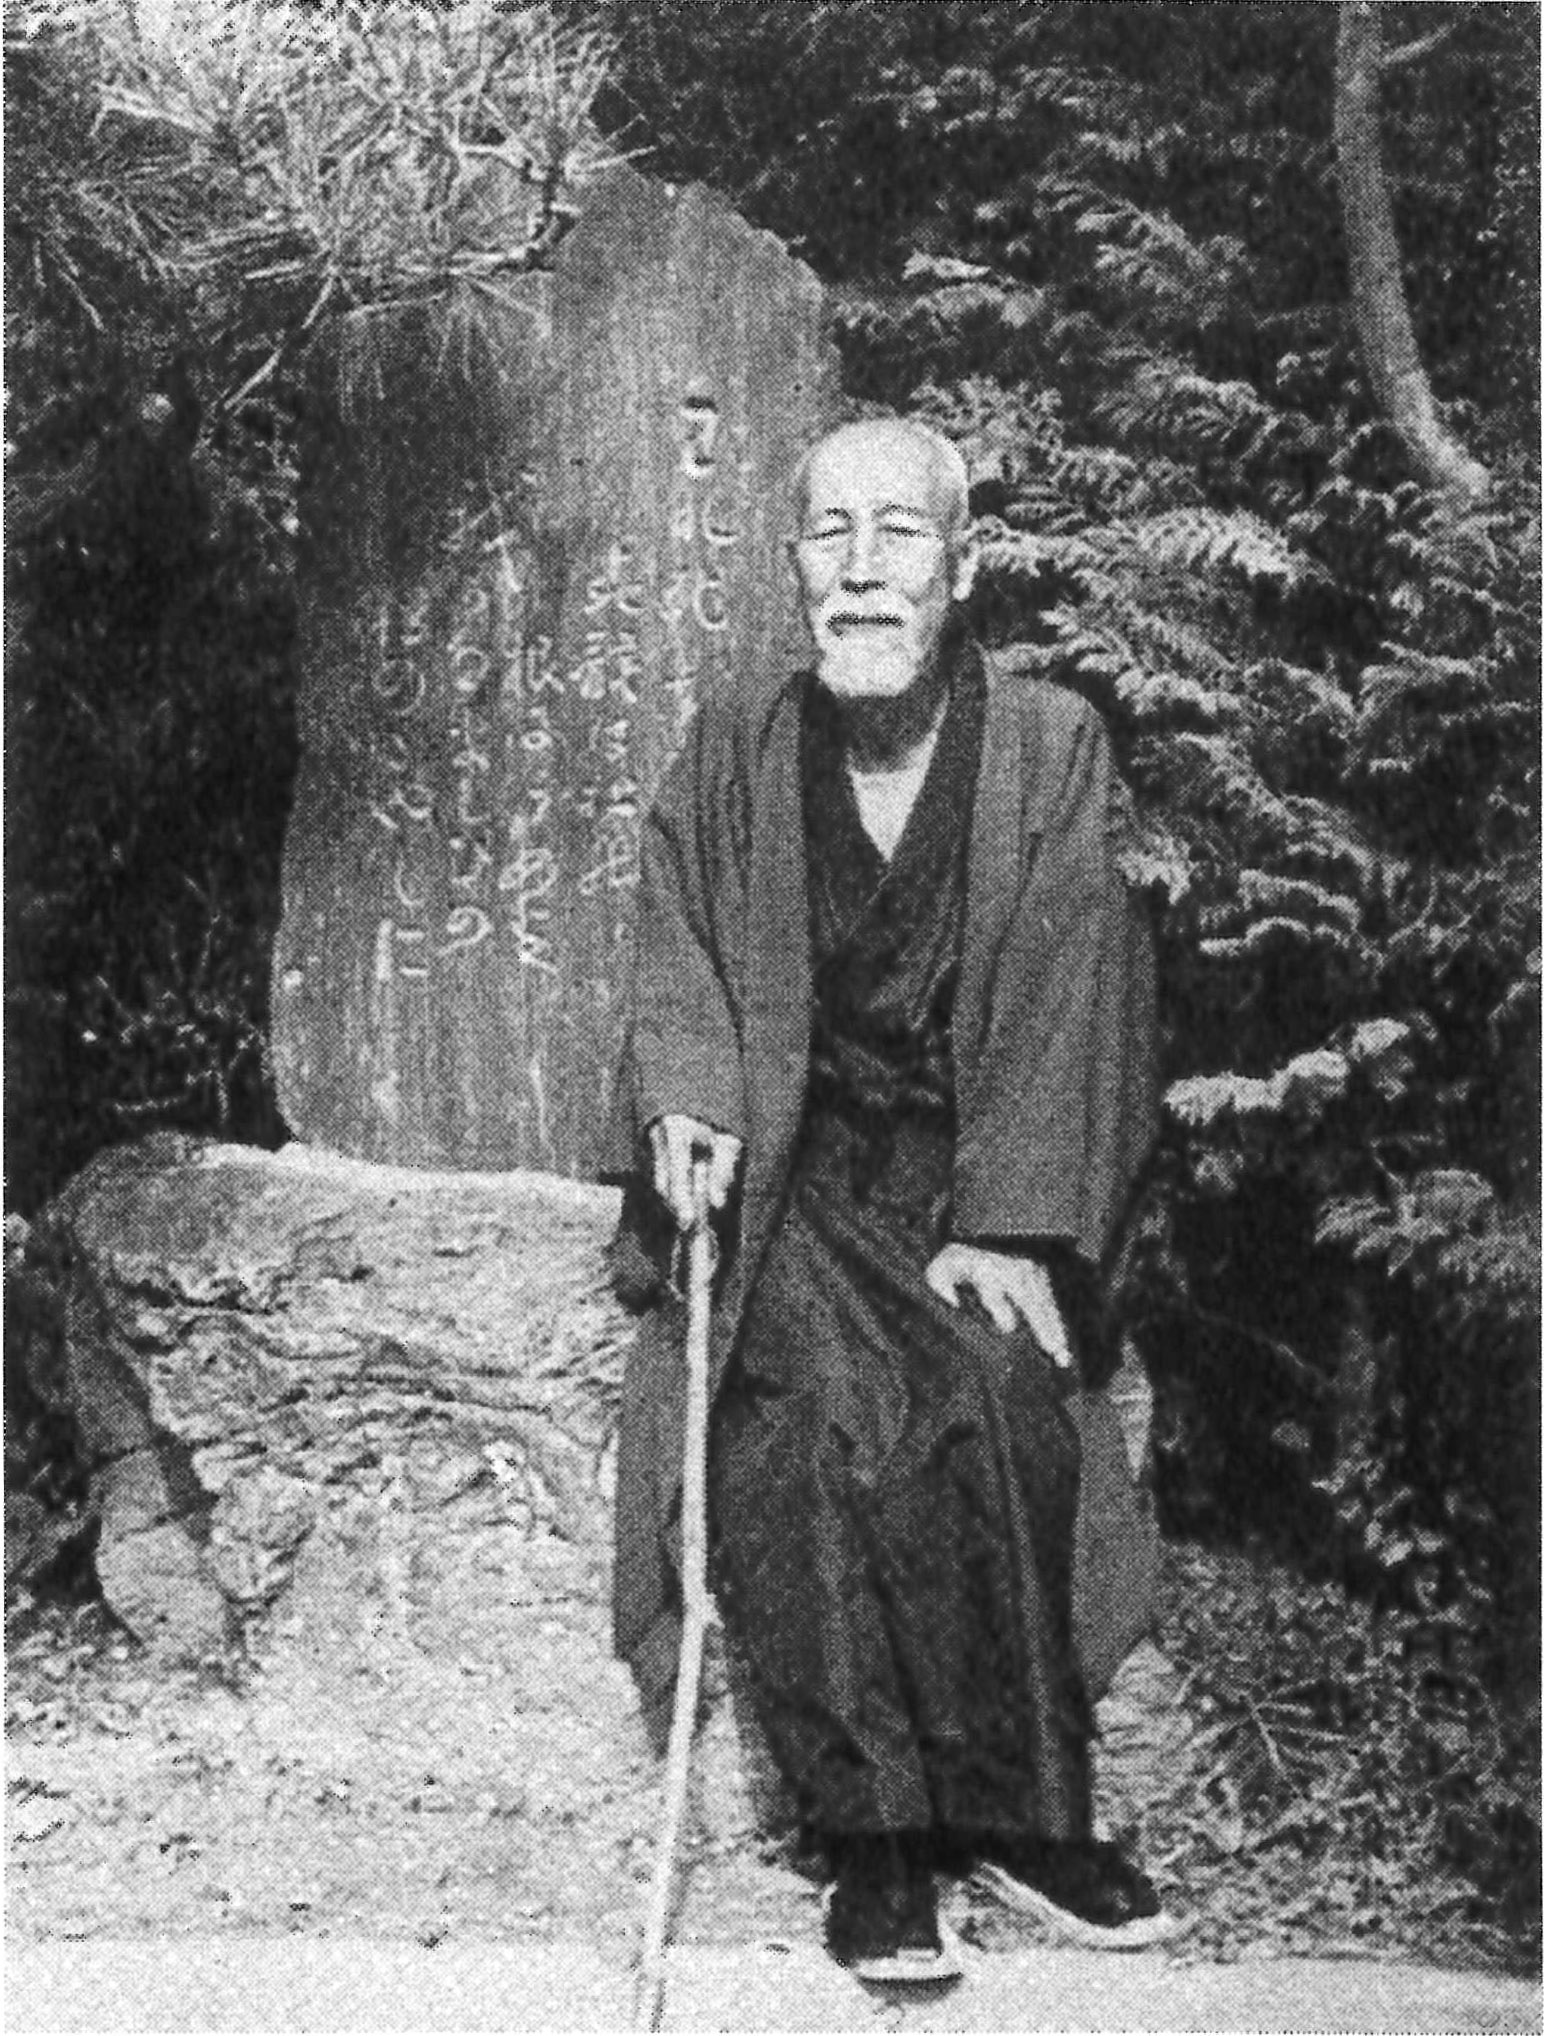 竹島の辞世の句碑が完成したのち鎌倉にも歌碑が完成する。音次郎が台座に座っている記念写真。